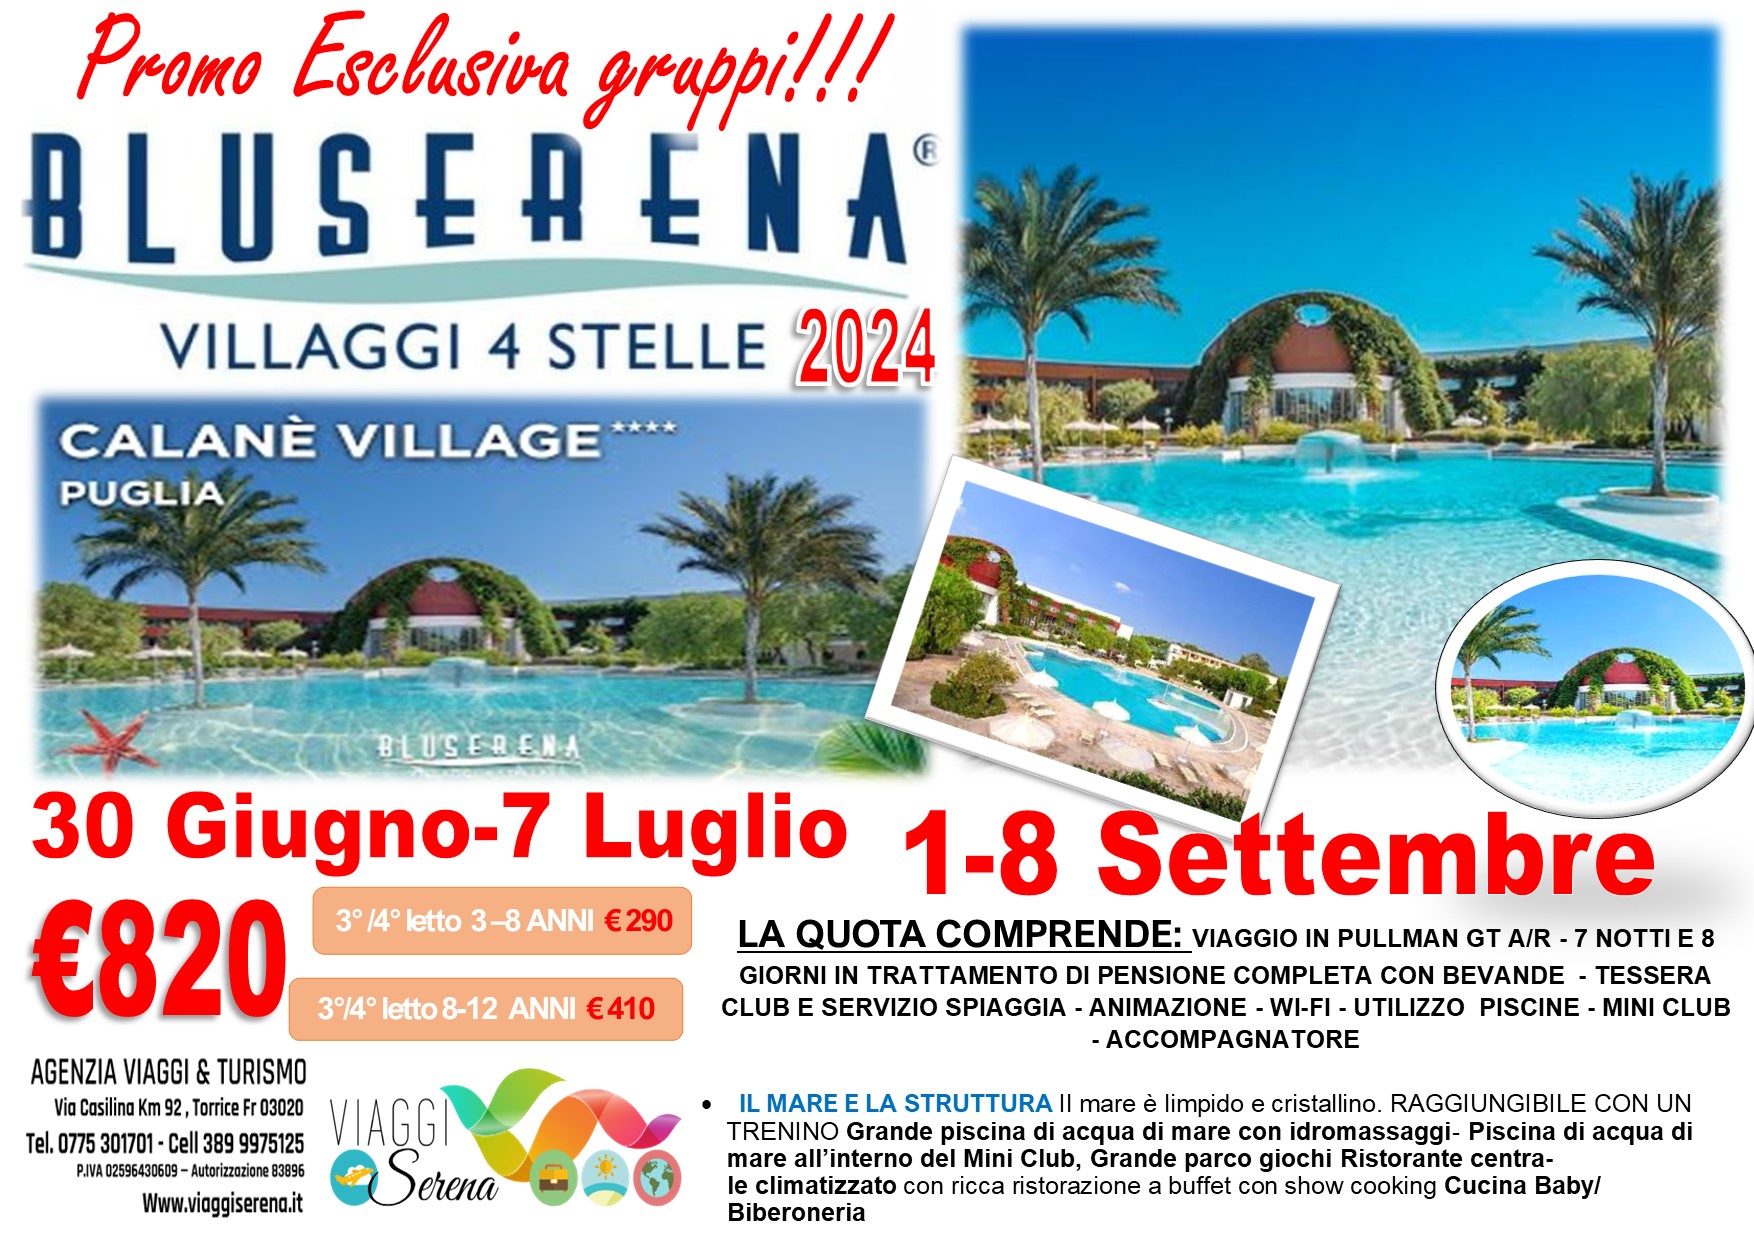 Viaggi di gruppo: Villaggio Mare BluSerena Calane’ Village 1-8 Settembre €820,00